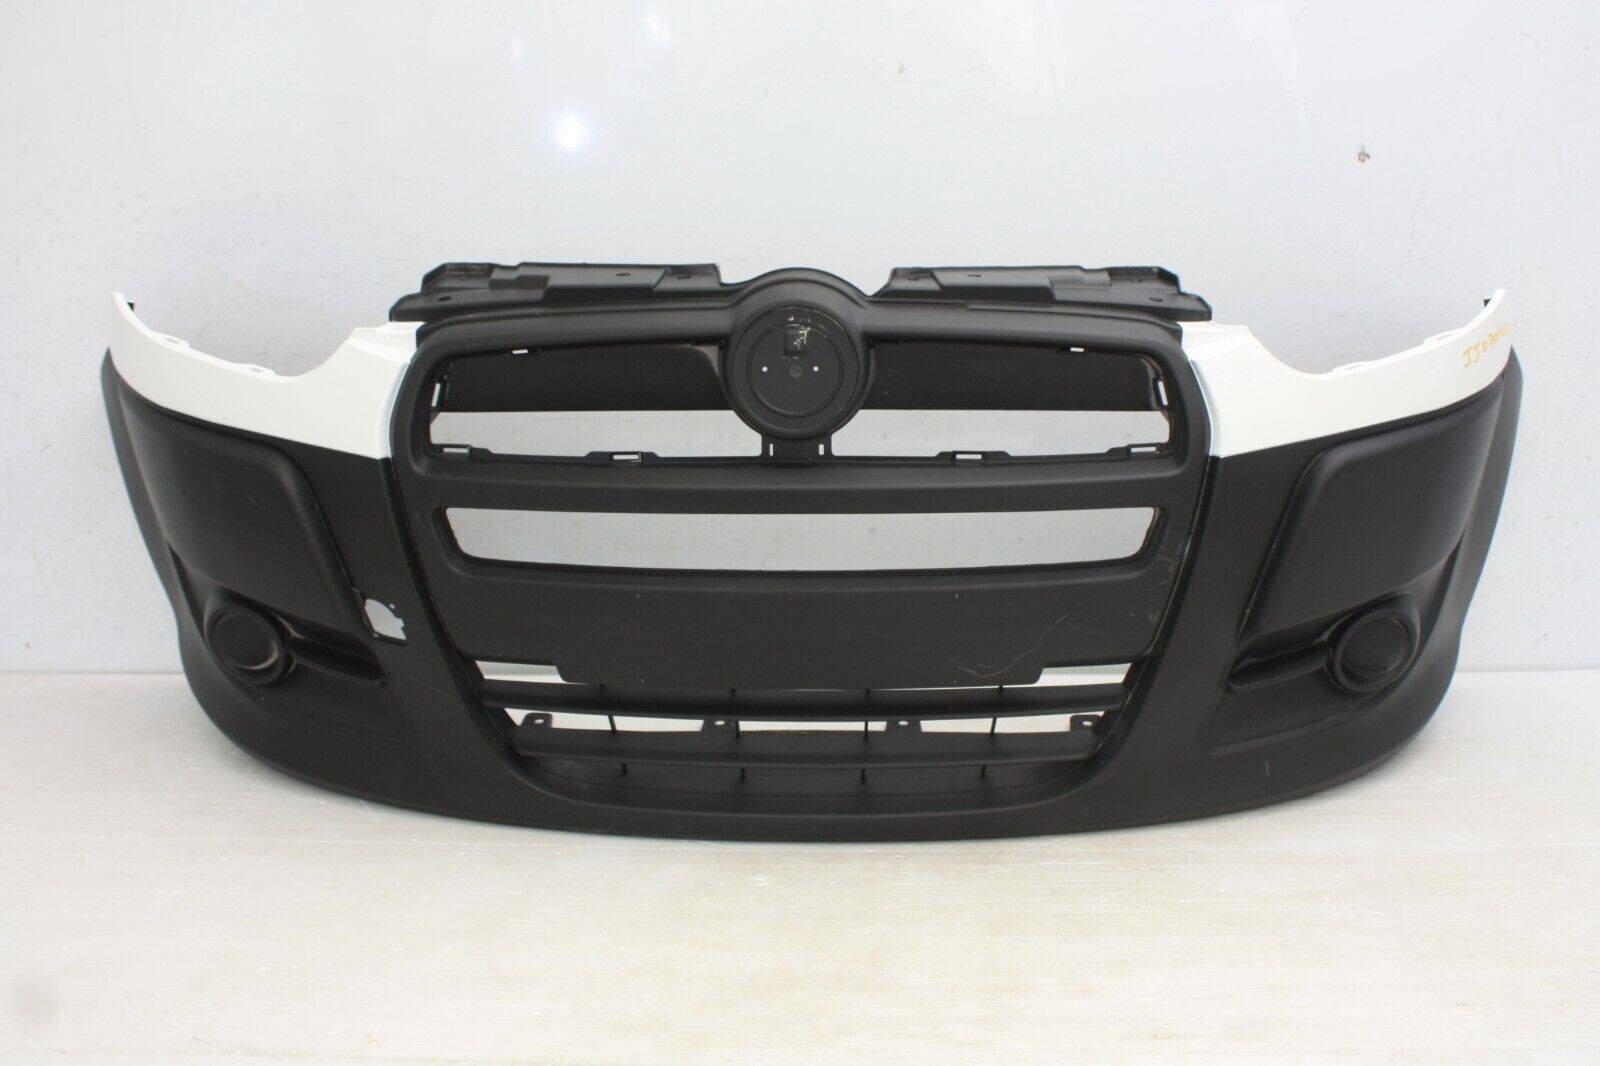 Fiat Doblo Front Bumper 2010 TO 2015 735455570 Genuine GOT SCRATCHES 175681017943